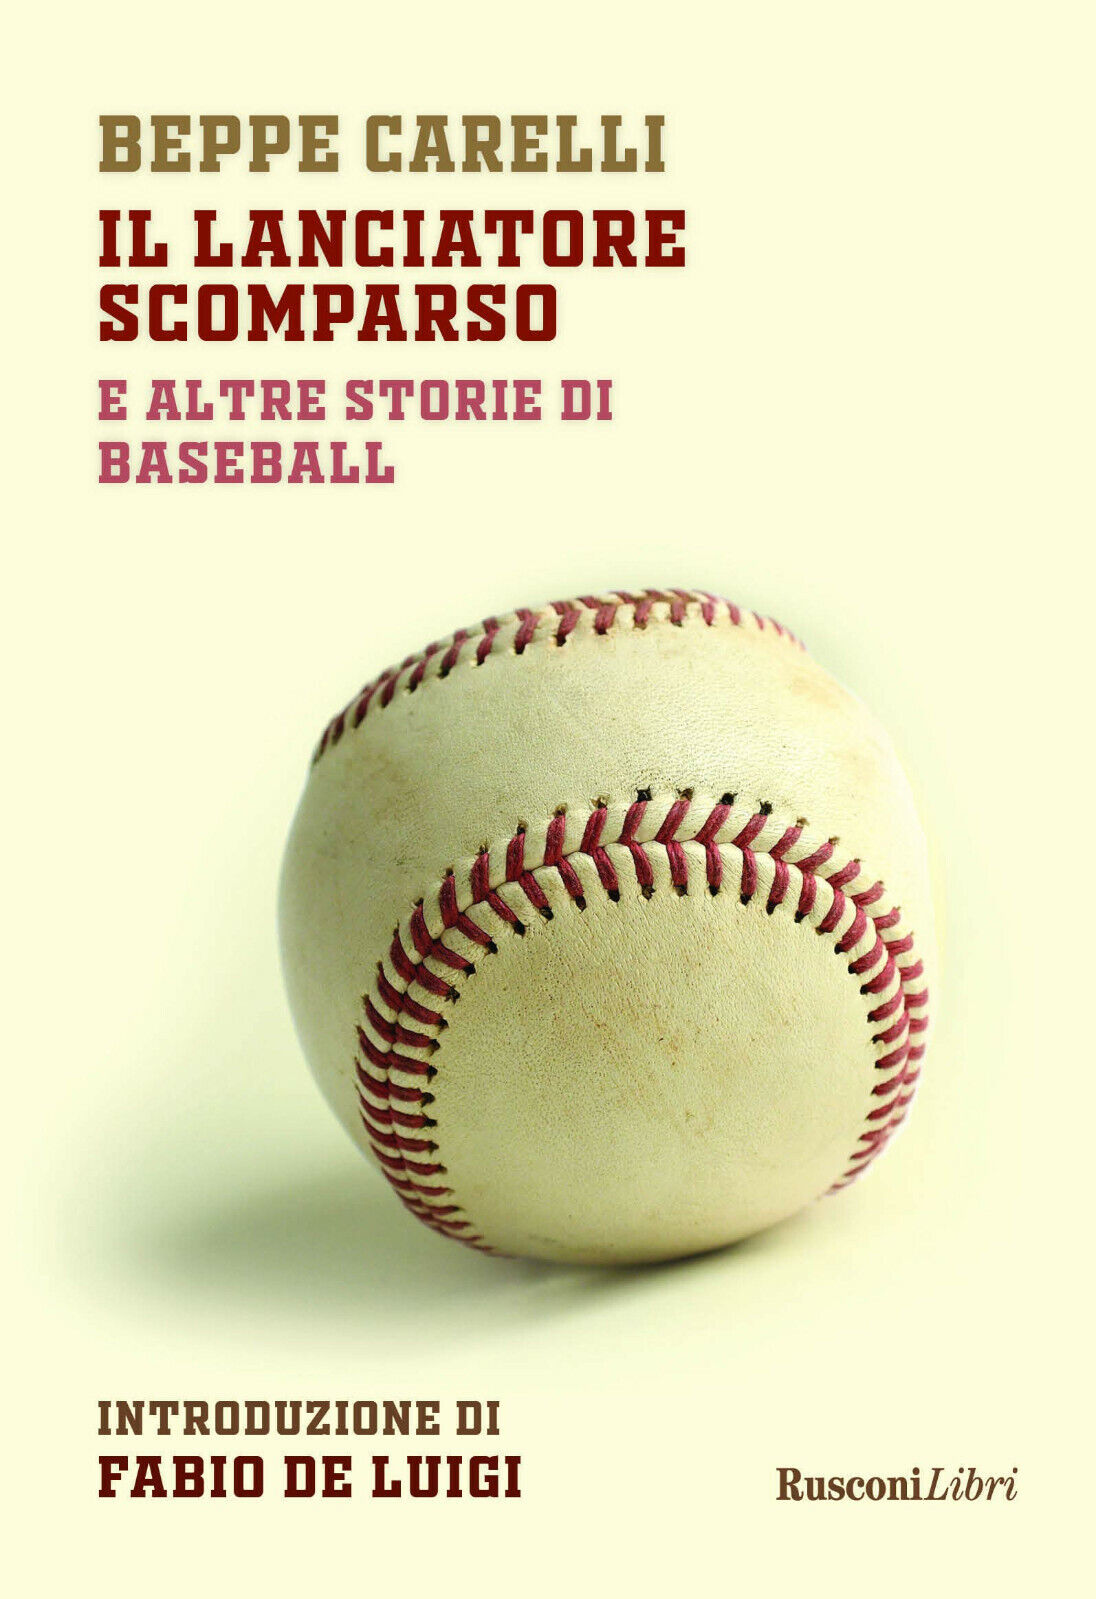 Il lanciatore scomparso e altre storie di baseball - Beppe Carelli-Rusconi, 2019 libro usato